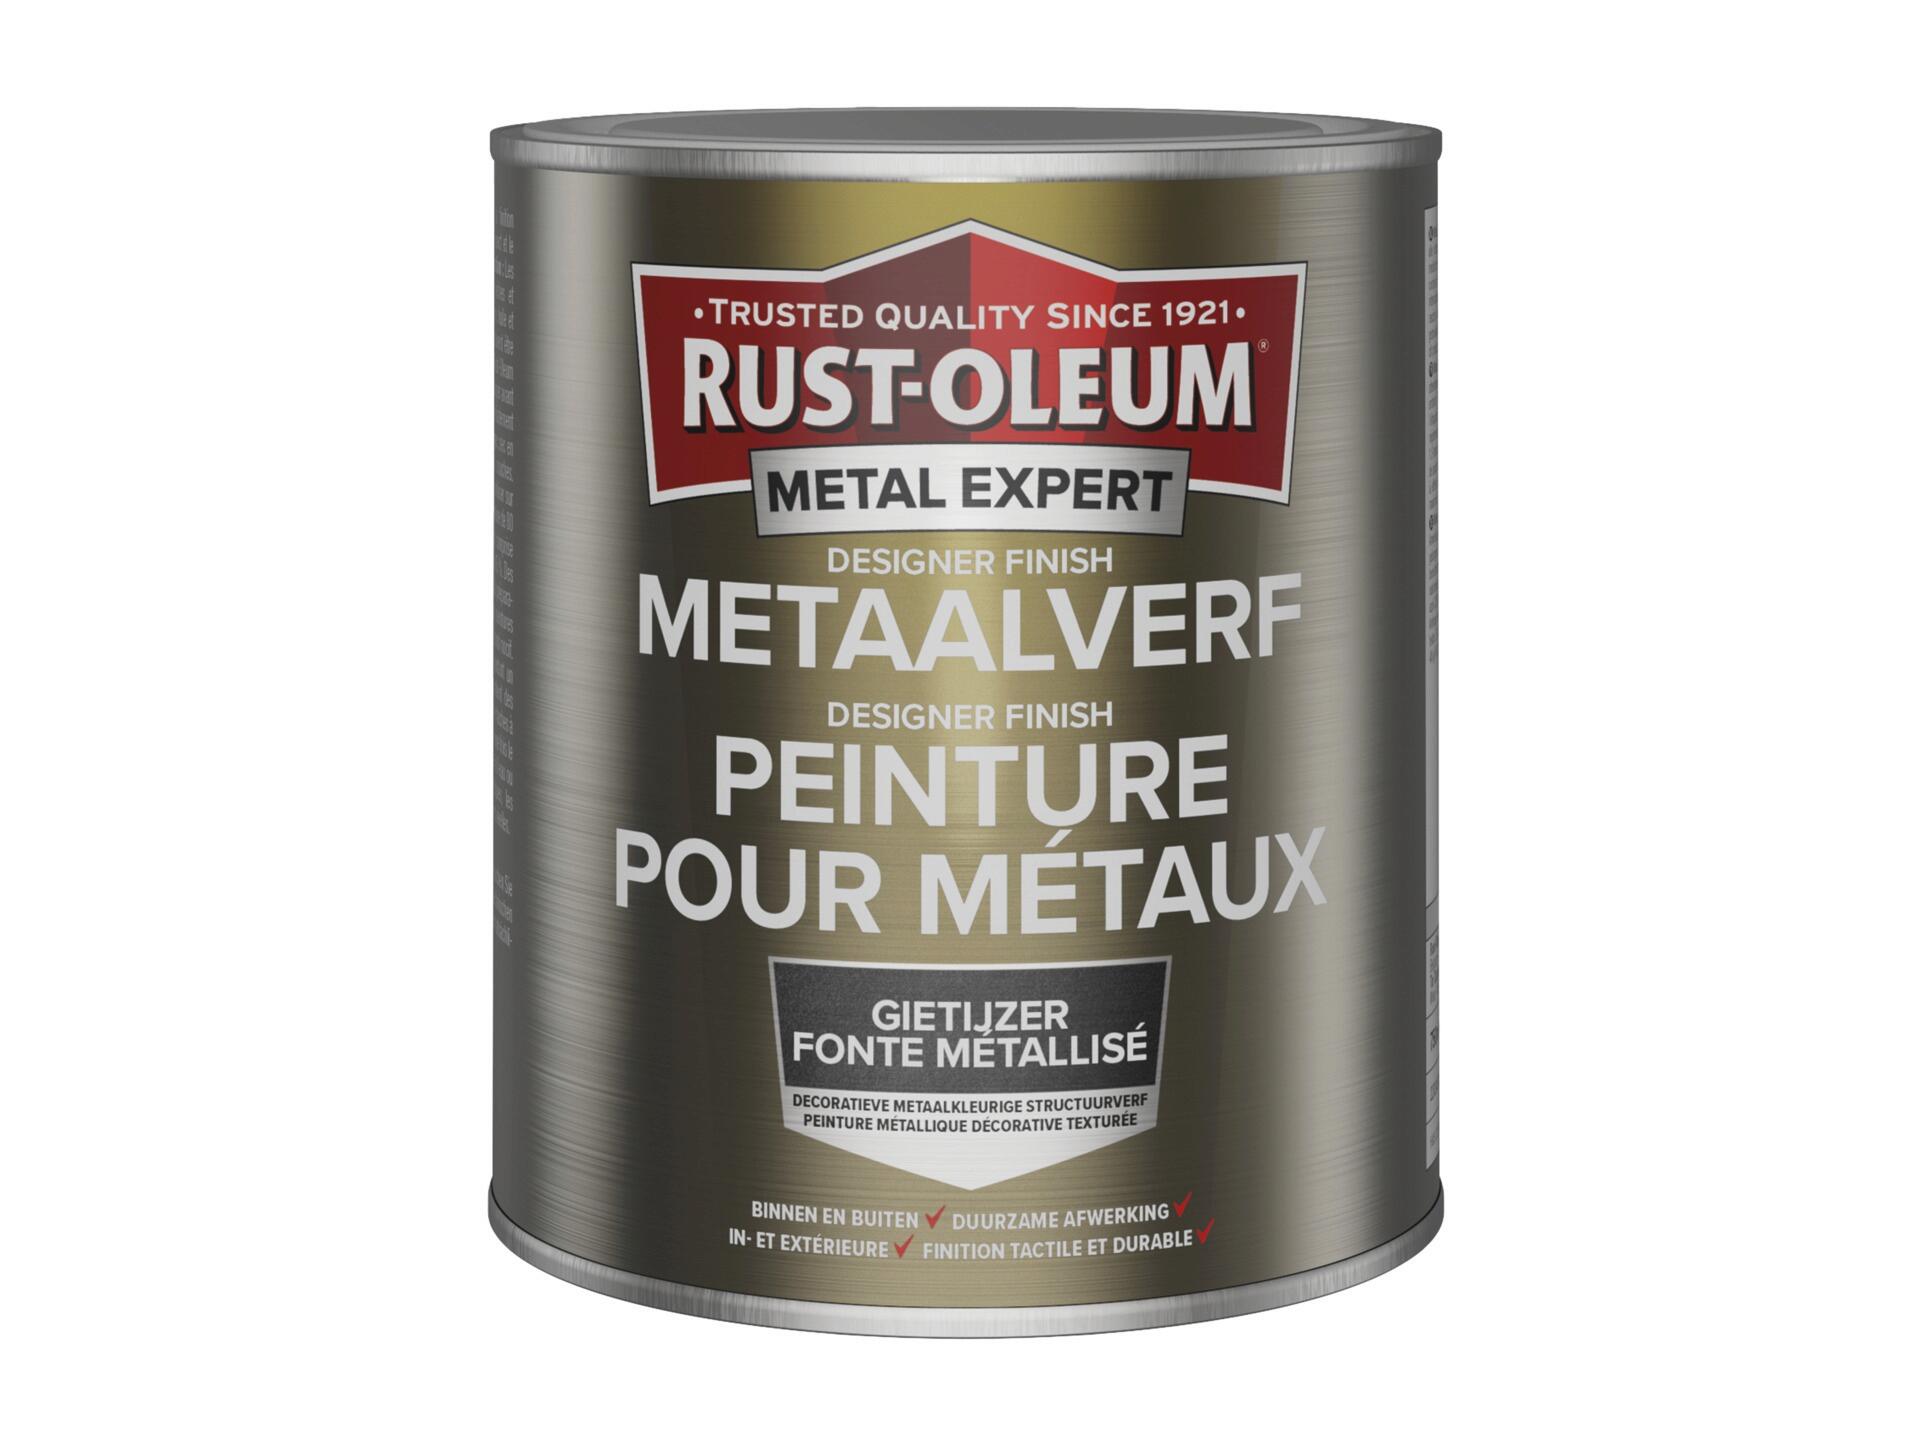 Rust-oleum Metal Expert Designer Finish metaalverf 750ml gietijzer